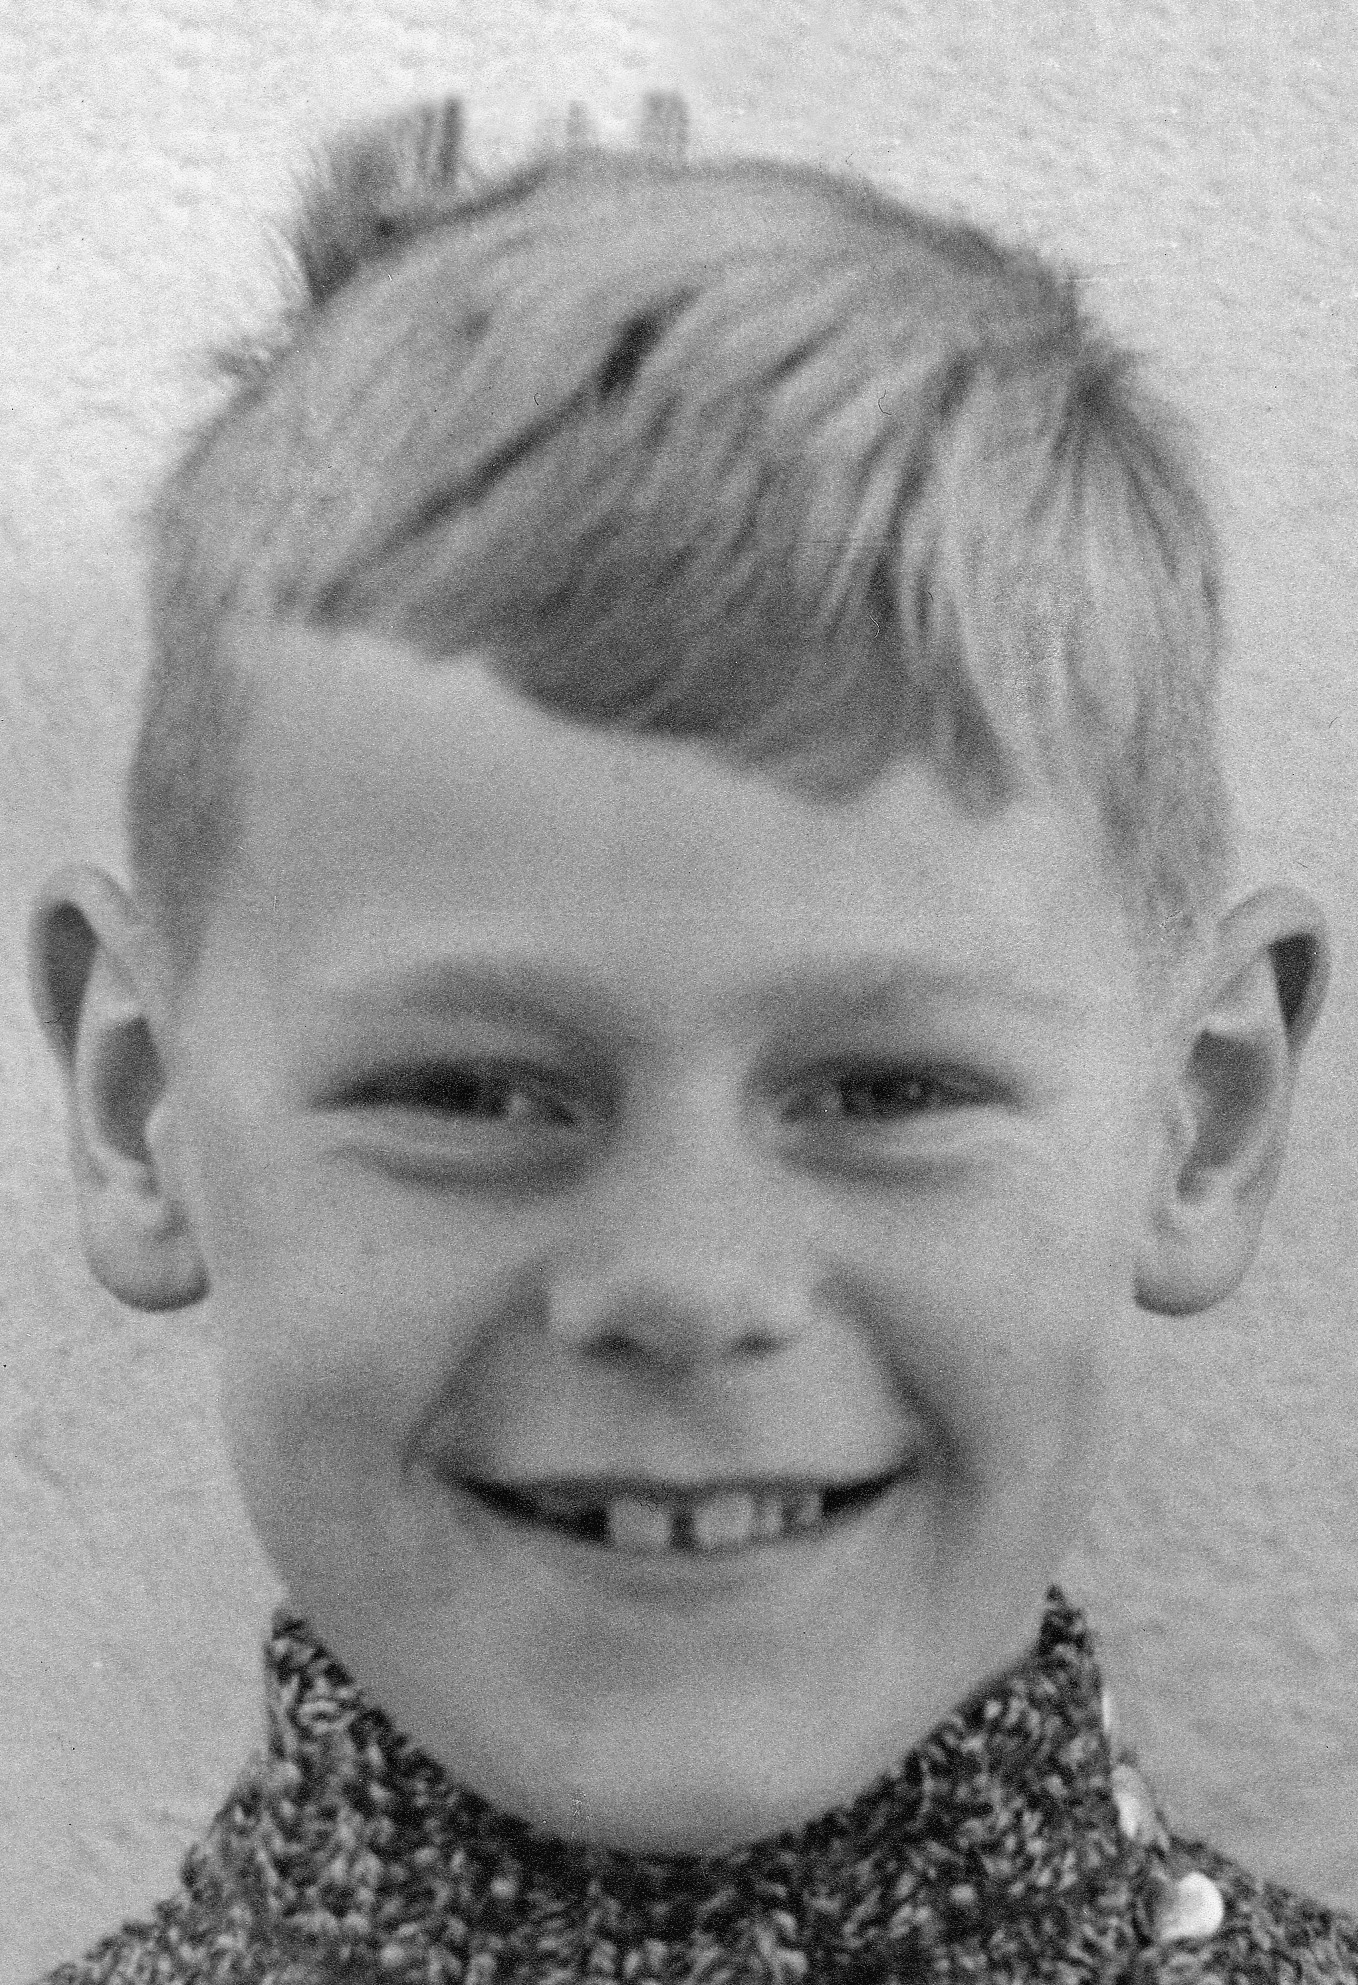 Das Foto ist ein Passbild in schwarz-weiß des Gründer der Weltethos Stiftung Hans Küng im Alter von 10 Jahren.